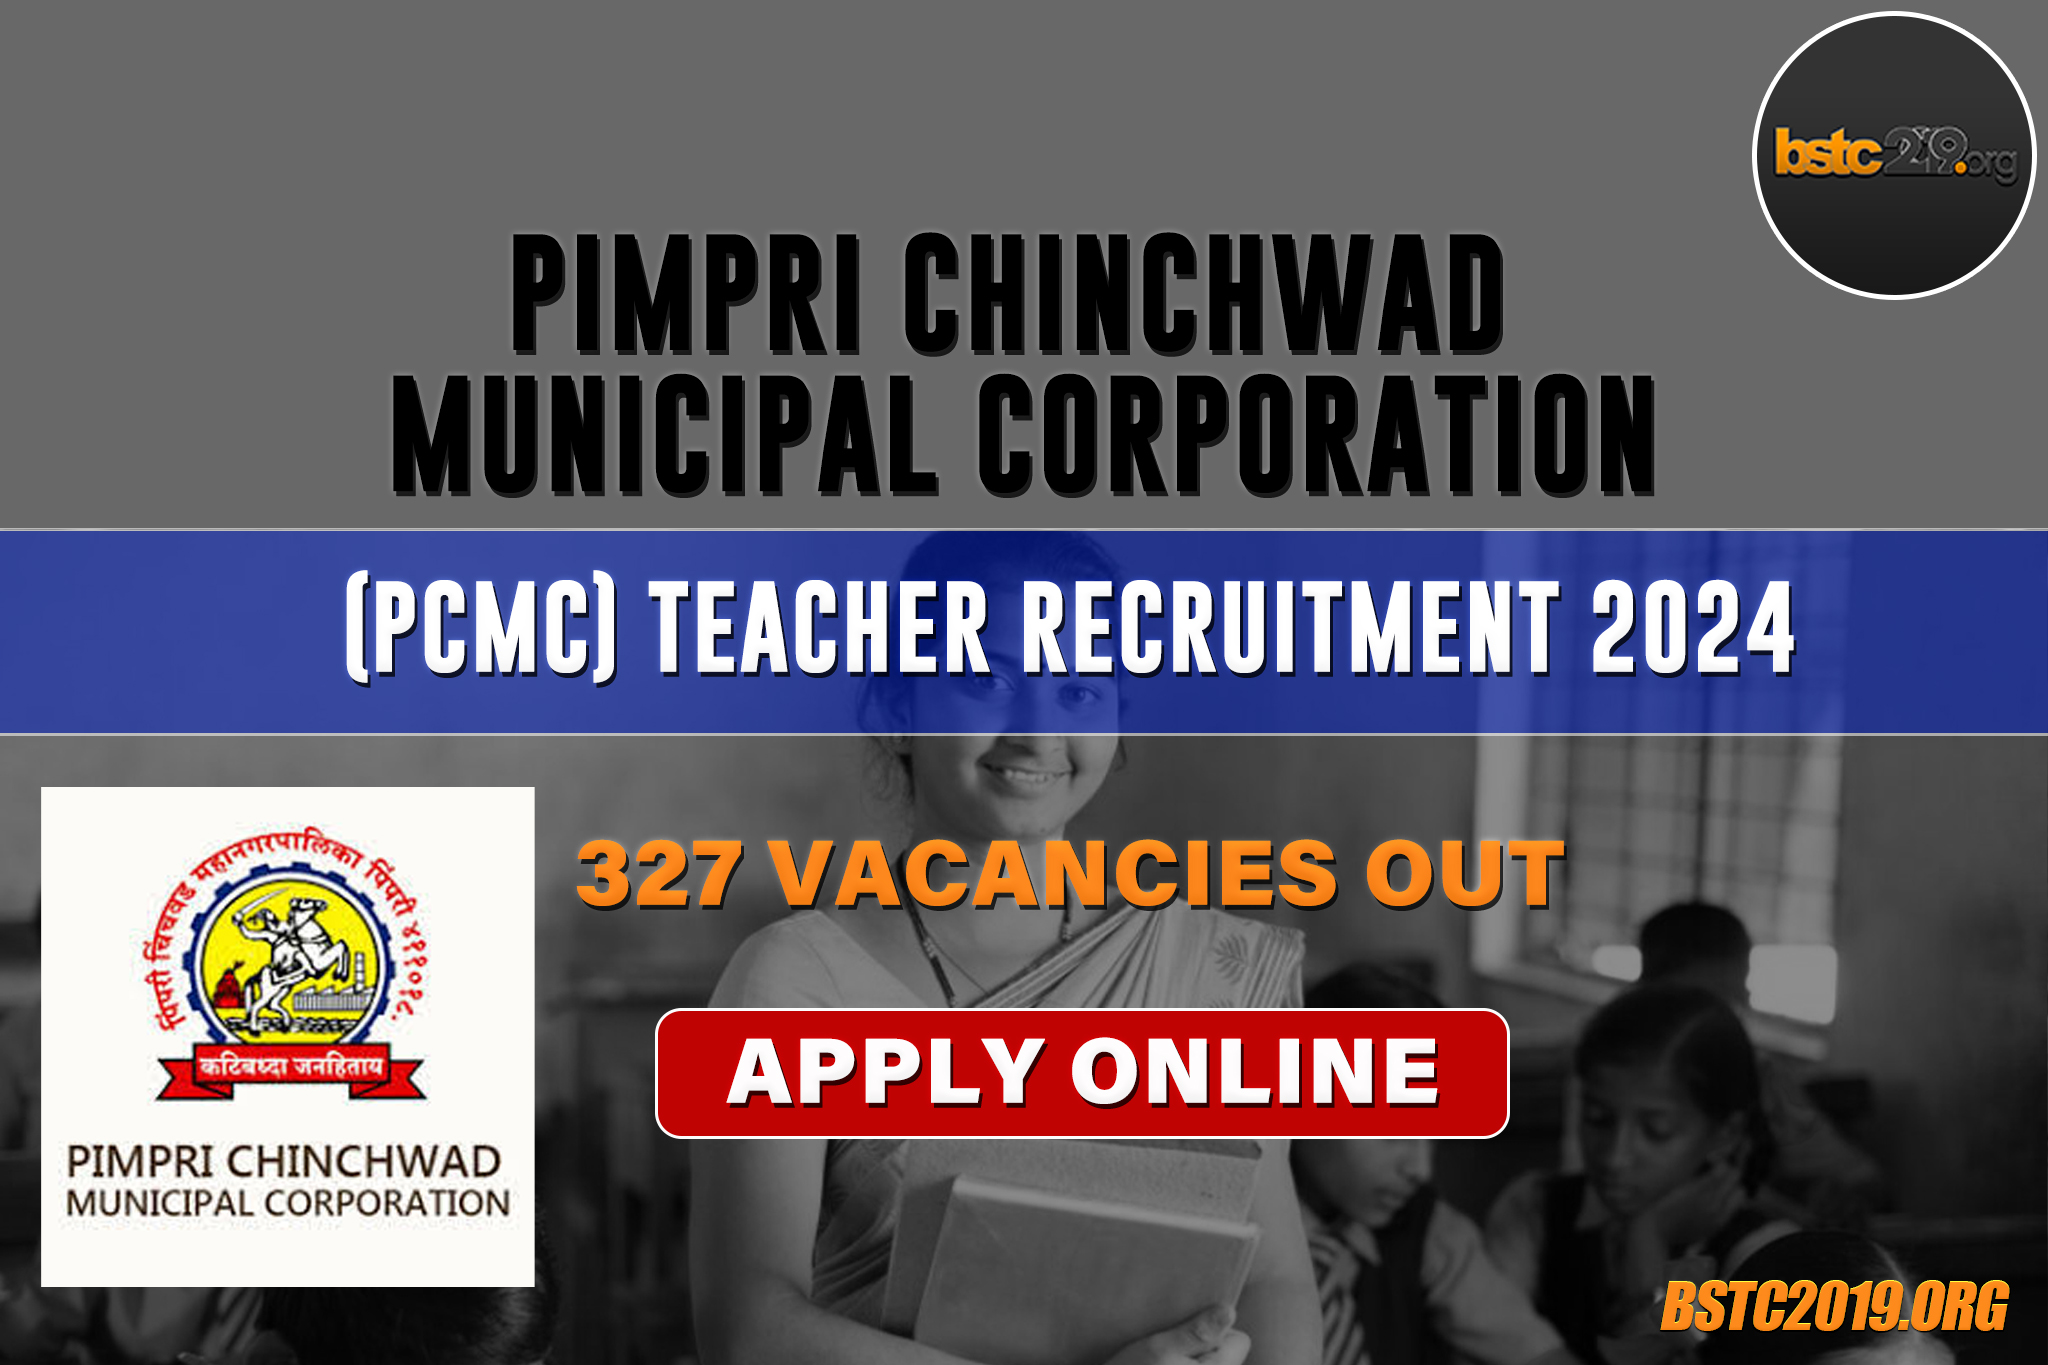 PCMC Teacher Recruitment 2024